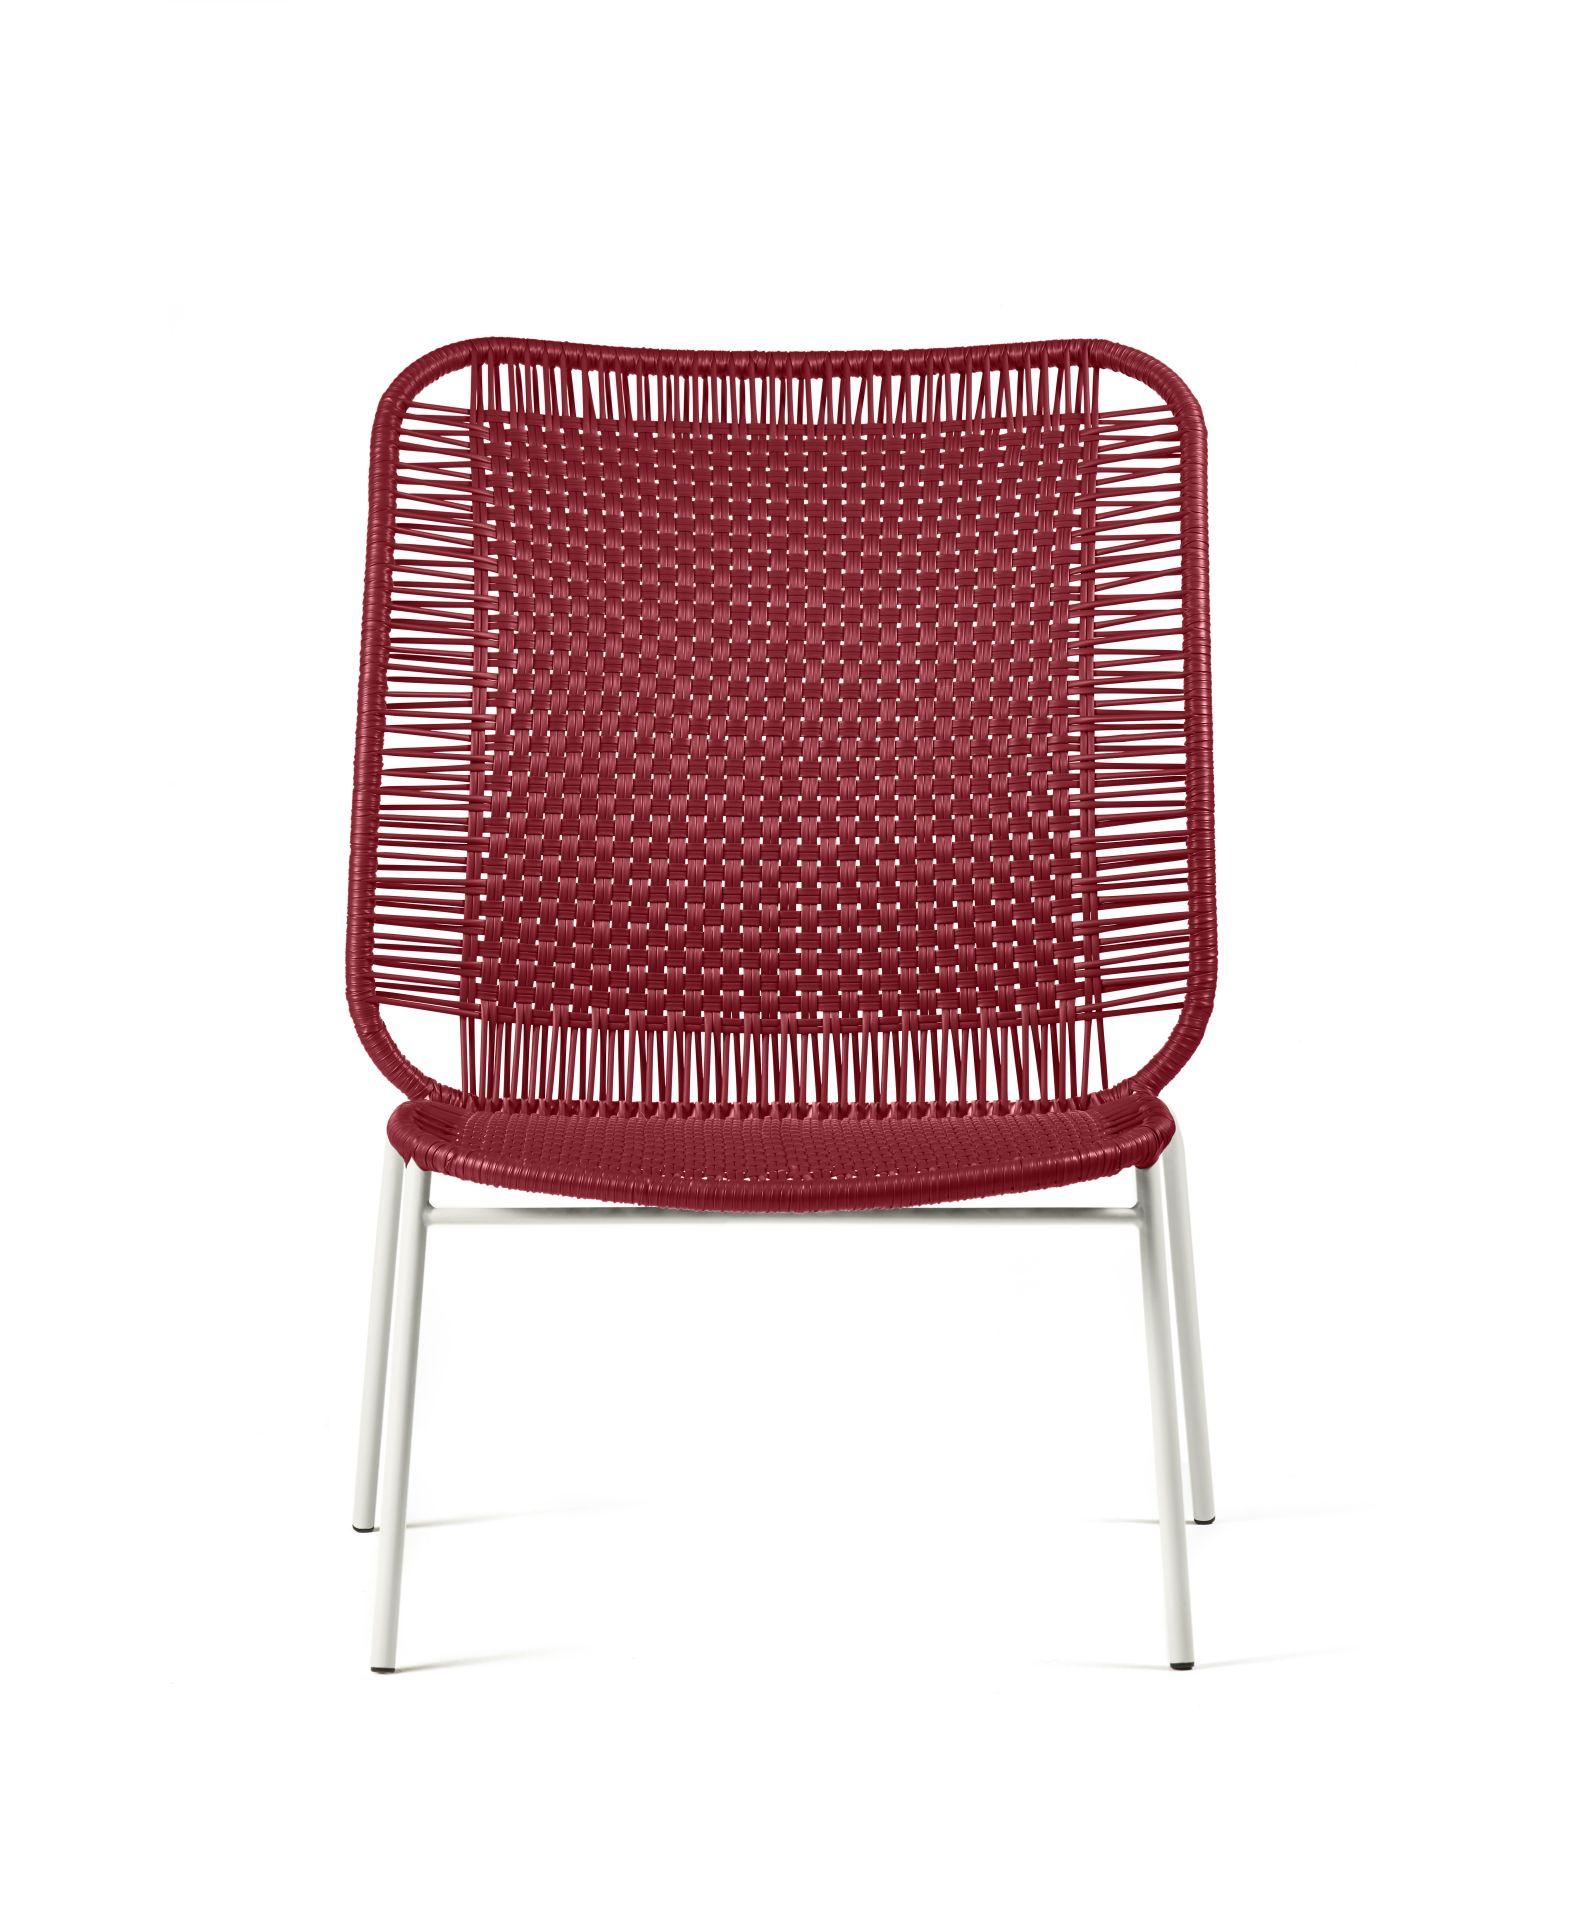 Design/One et inspiration
La chaise longue Cielo Lounge Chair High est une création légère, polyvalente et confortable de Sebastian Herkner. Il est prêt à être utilisé à l'intérieur et à l'extérieur et constitue un excellent choix pour créer des